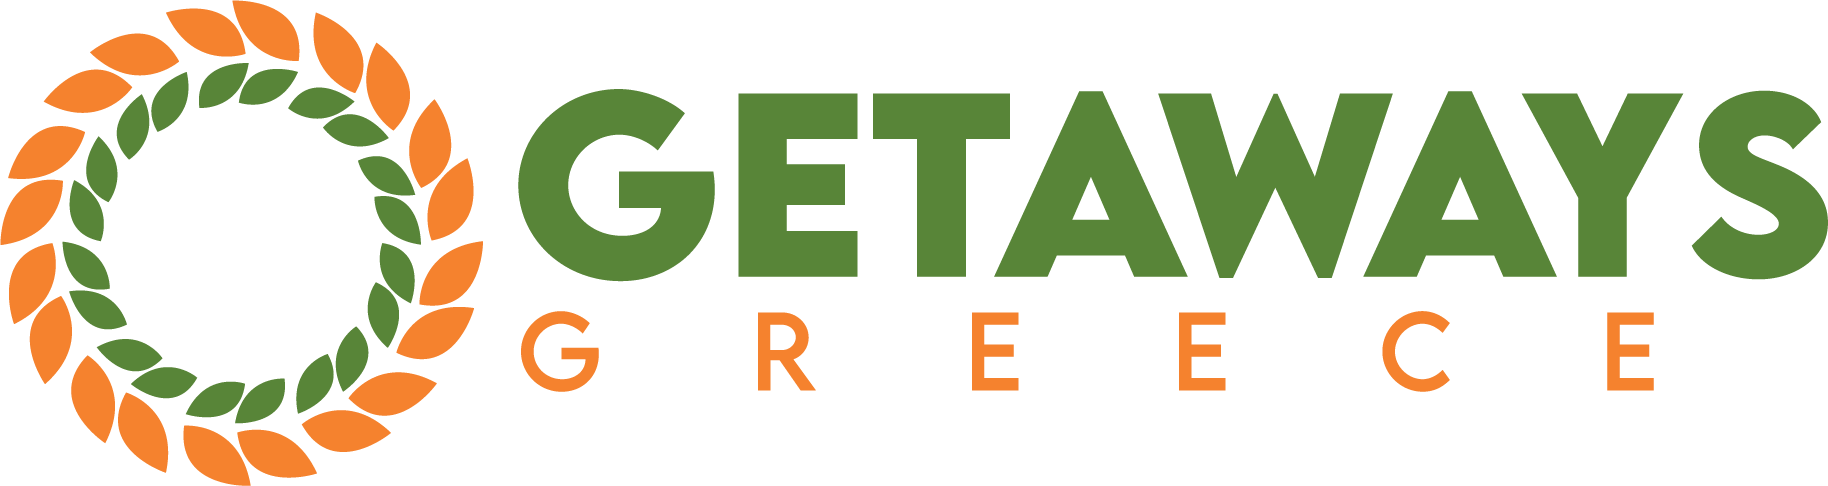 gg_logo